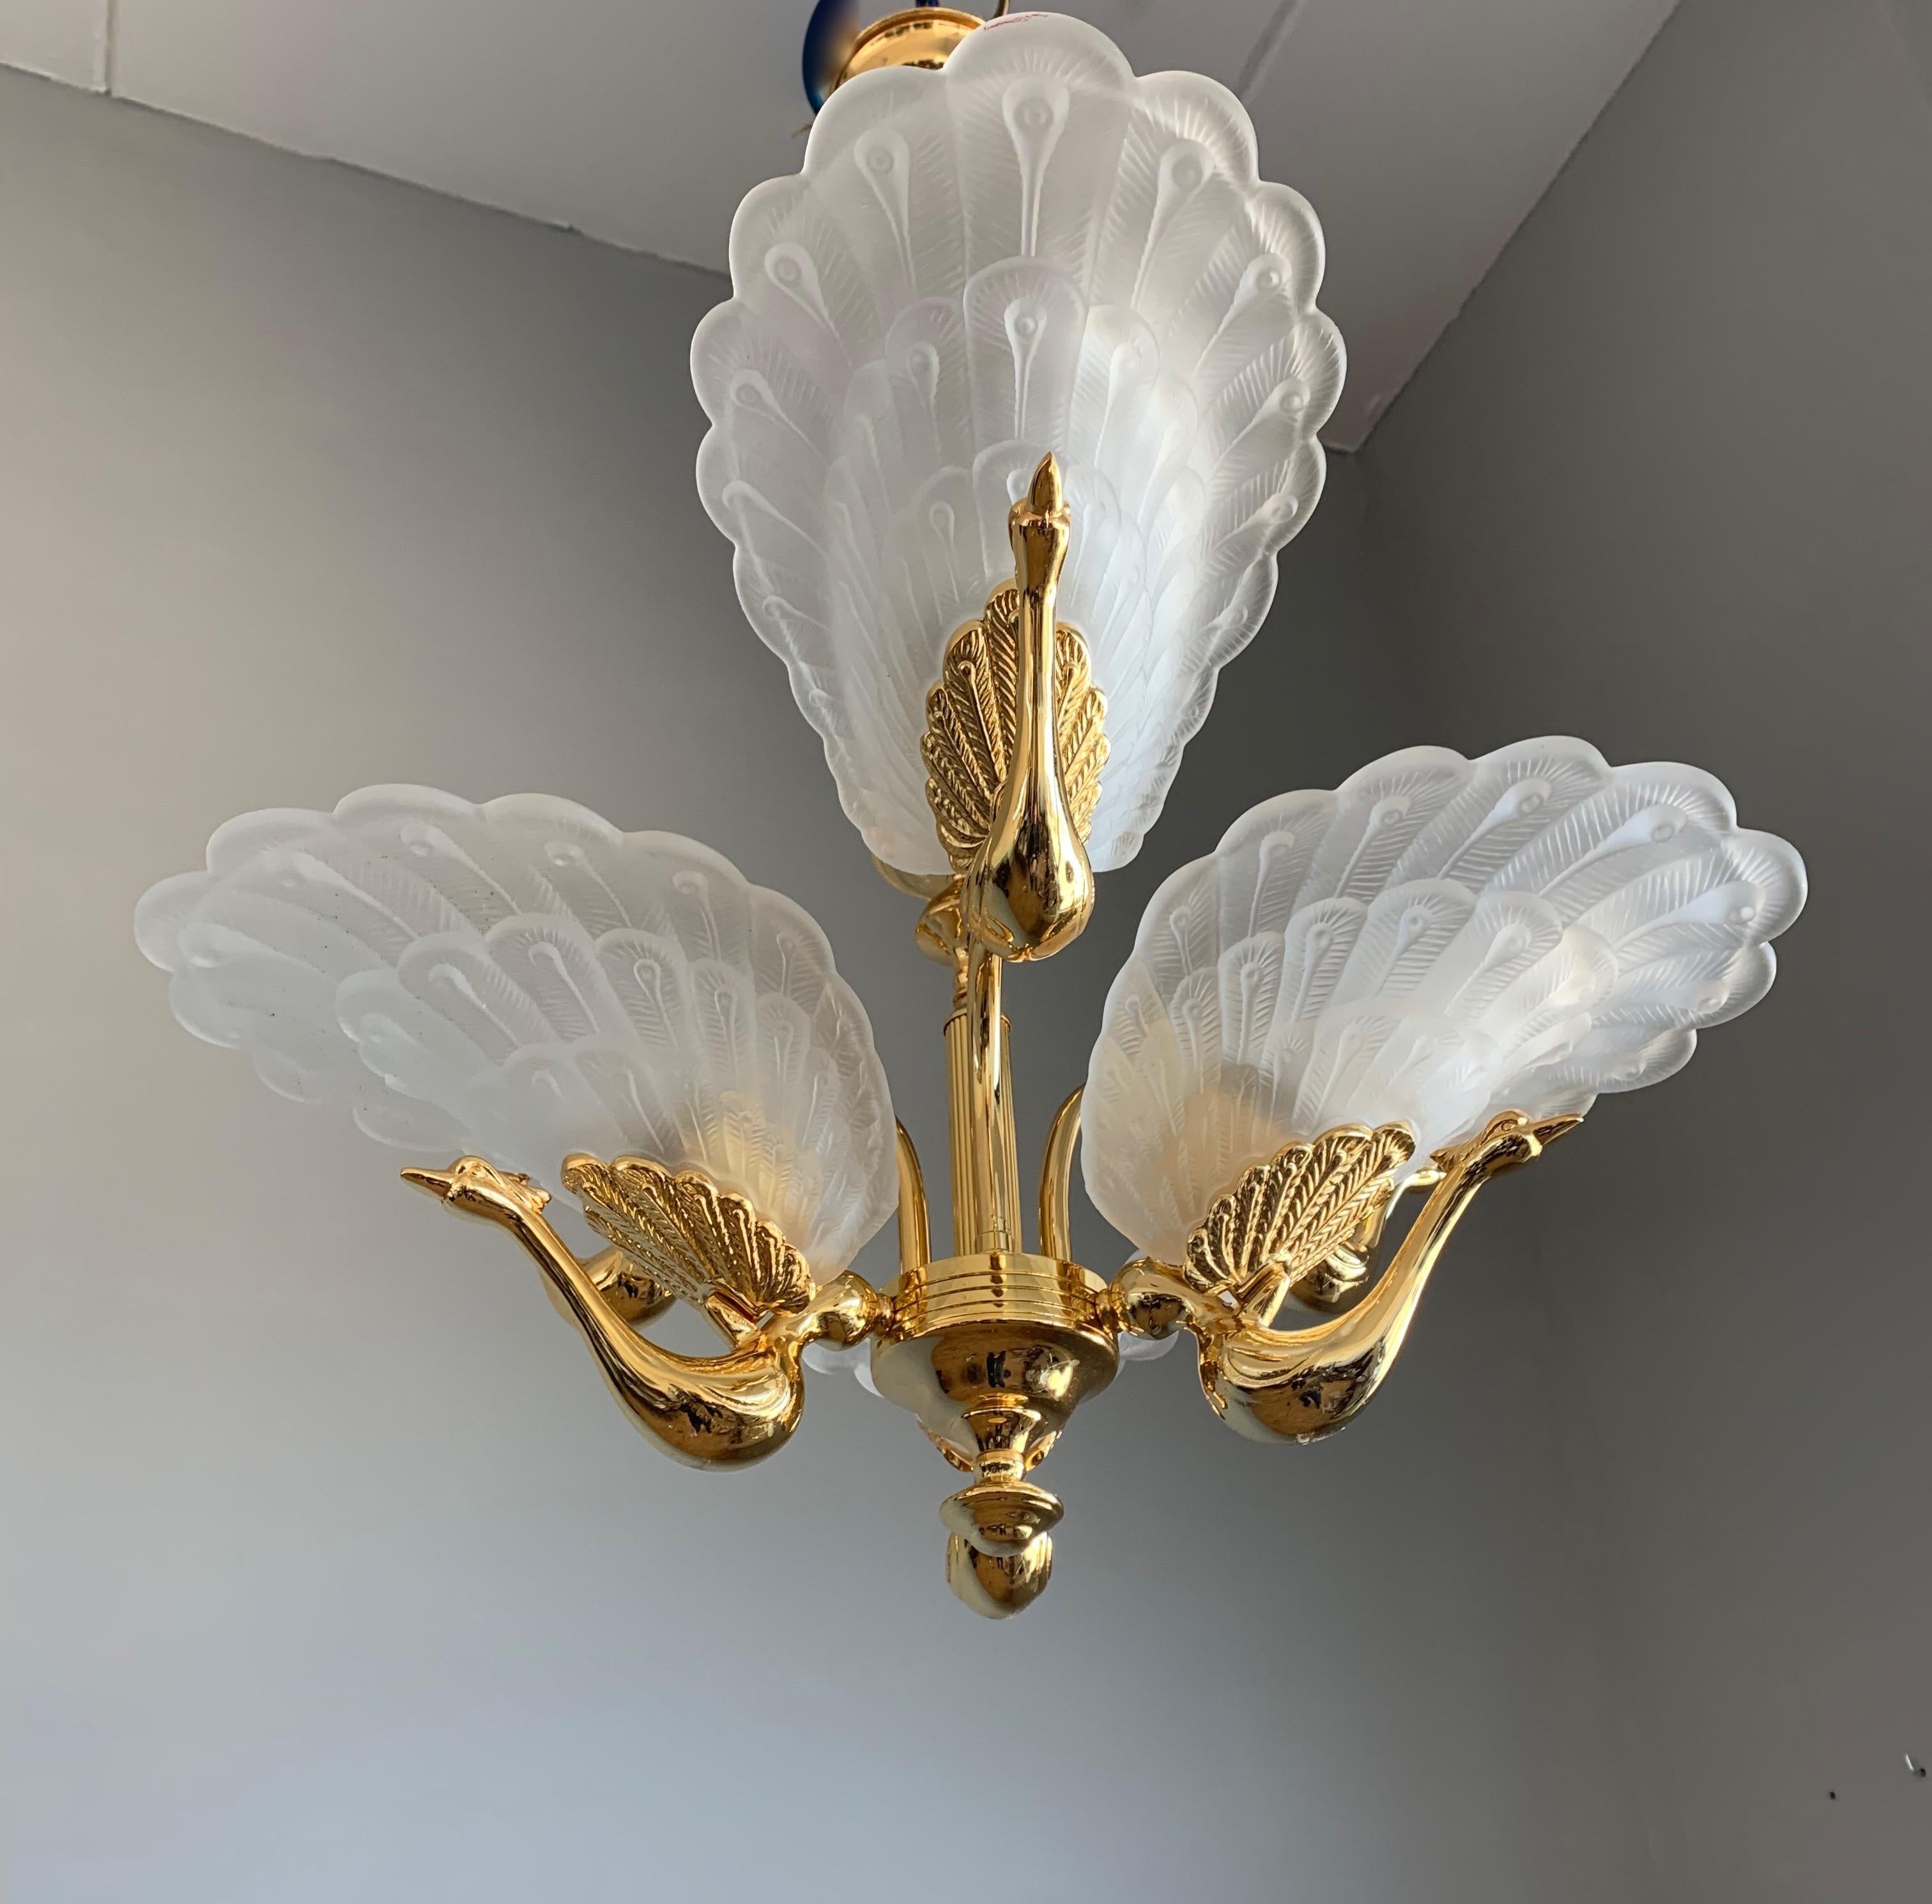 20th Century Rare Midcentury Chandelier / Pendant w. Golden Bronze & Glass Peacock Sculptures